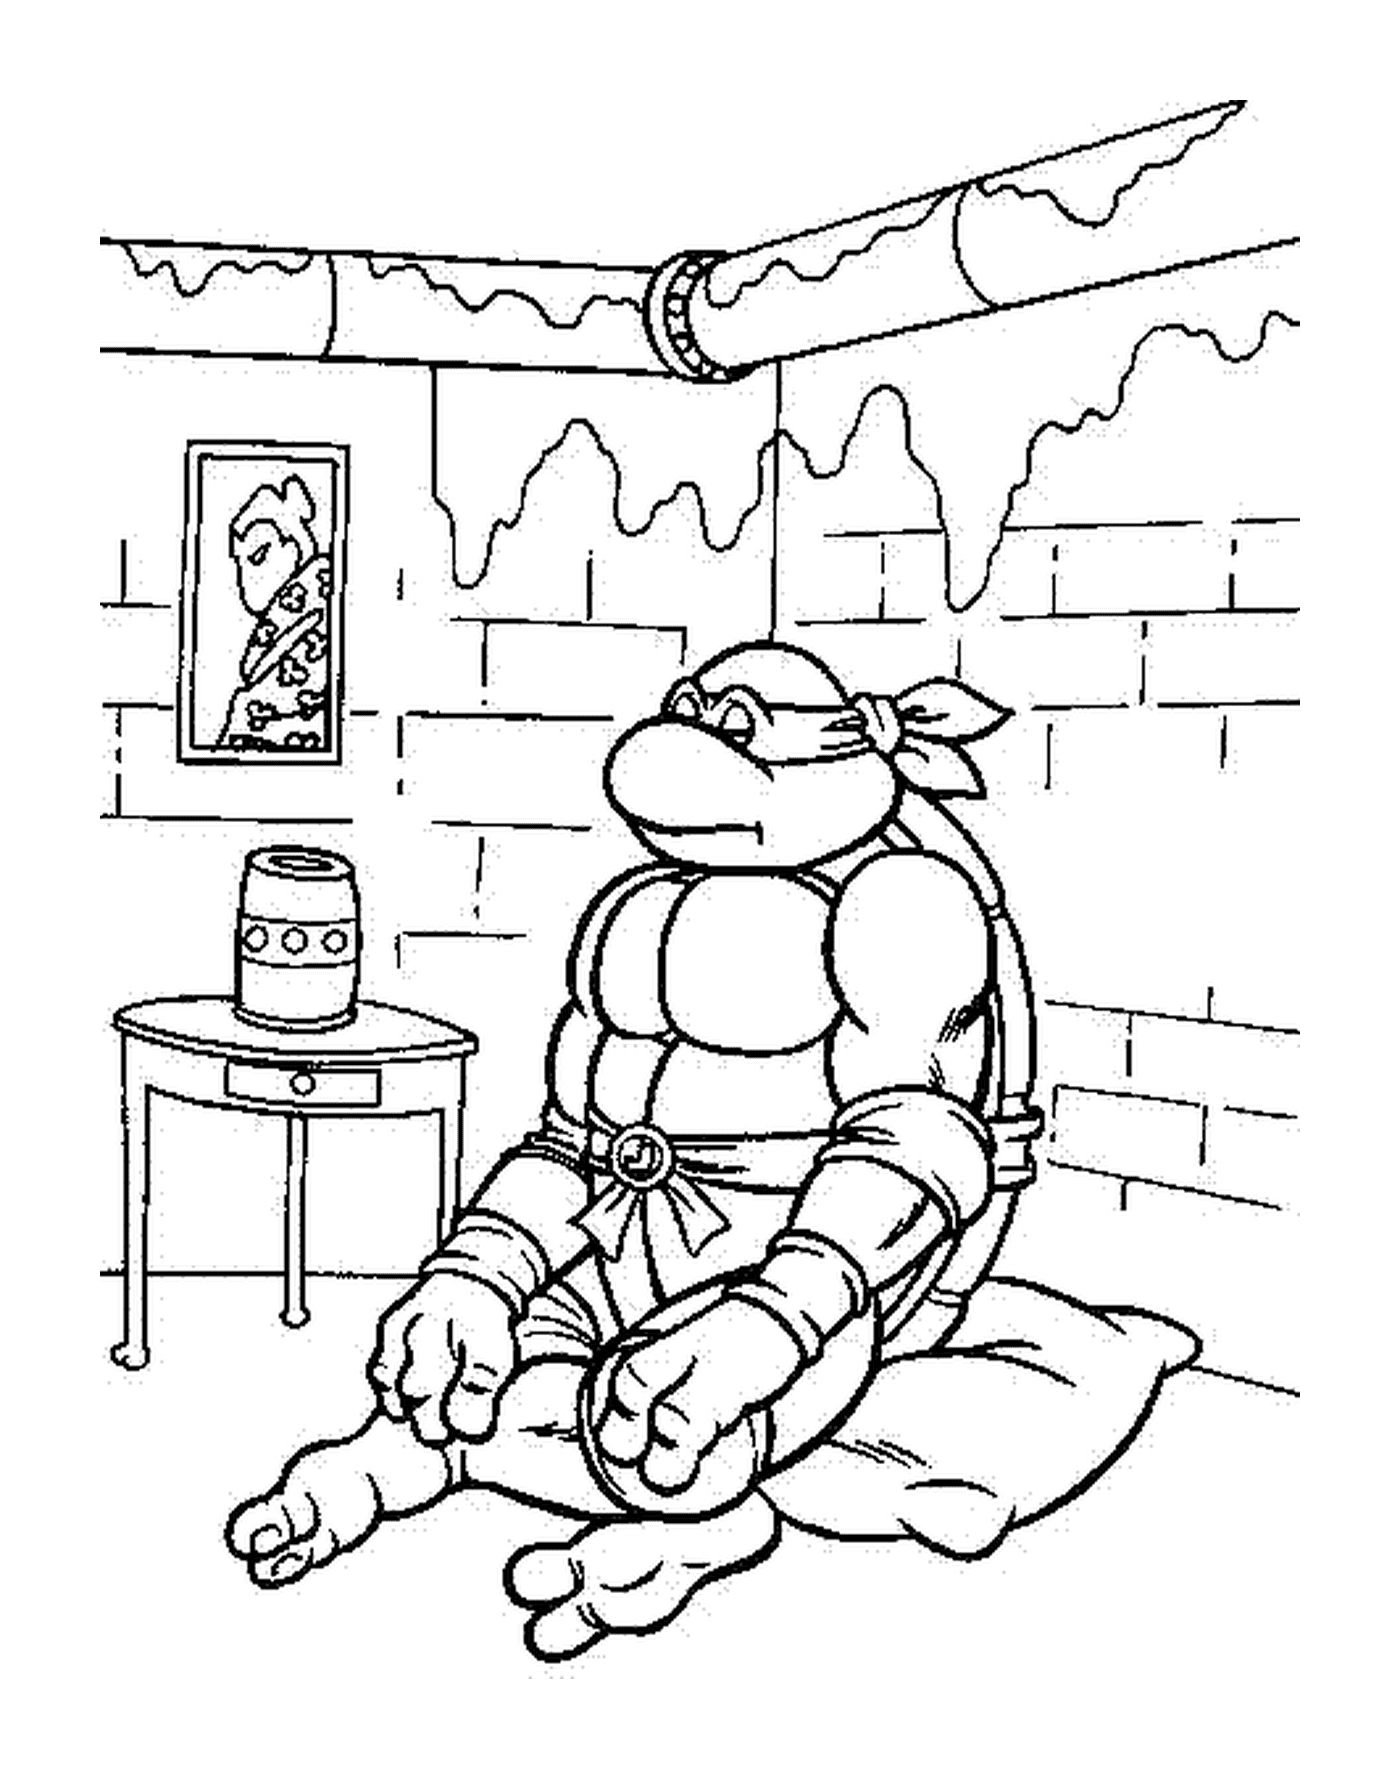  Tartaruga ninja seduta in una stanza 